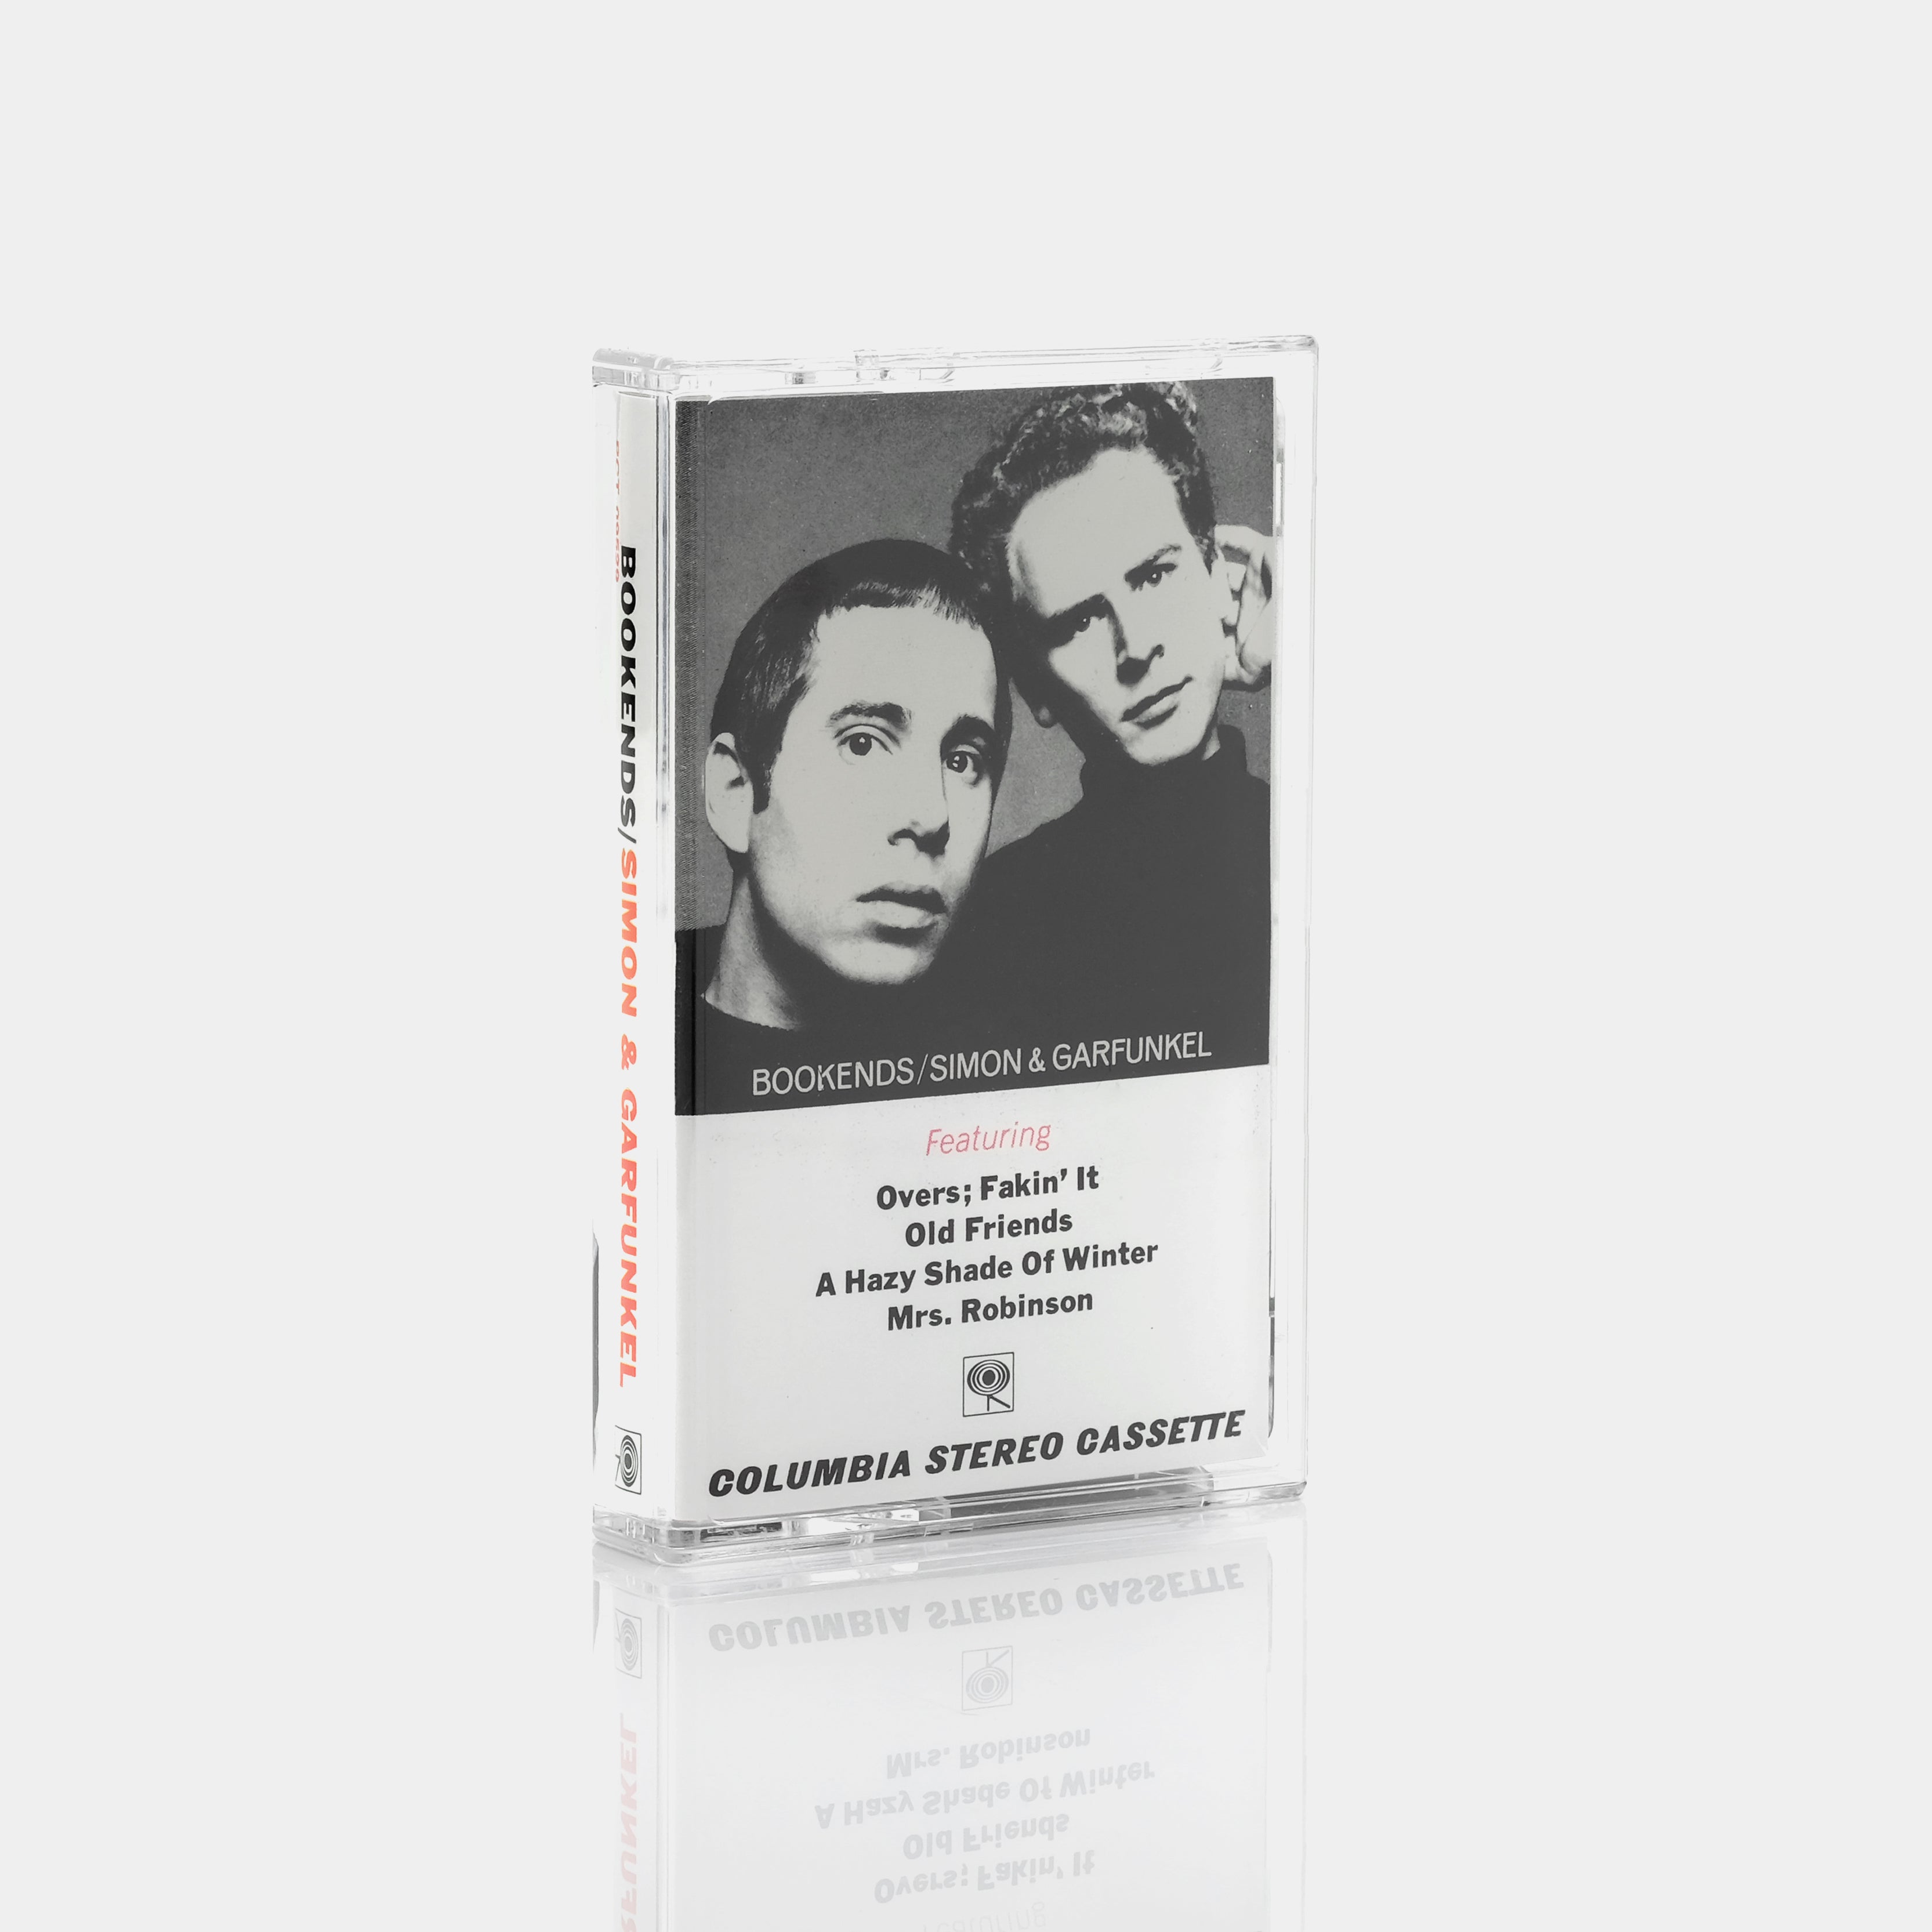 Simon & Garfunkel - Bookends Cassette Tape